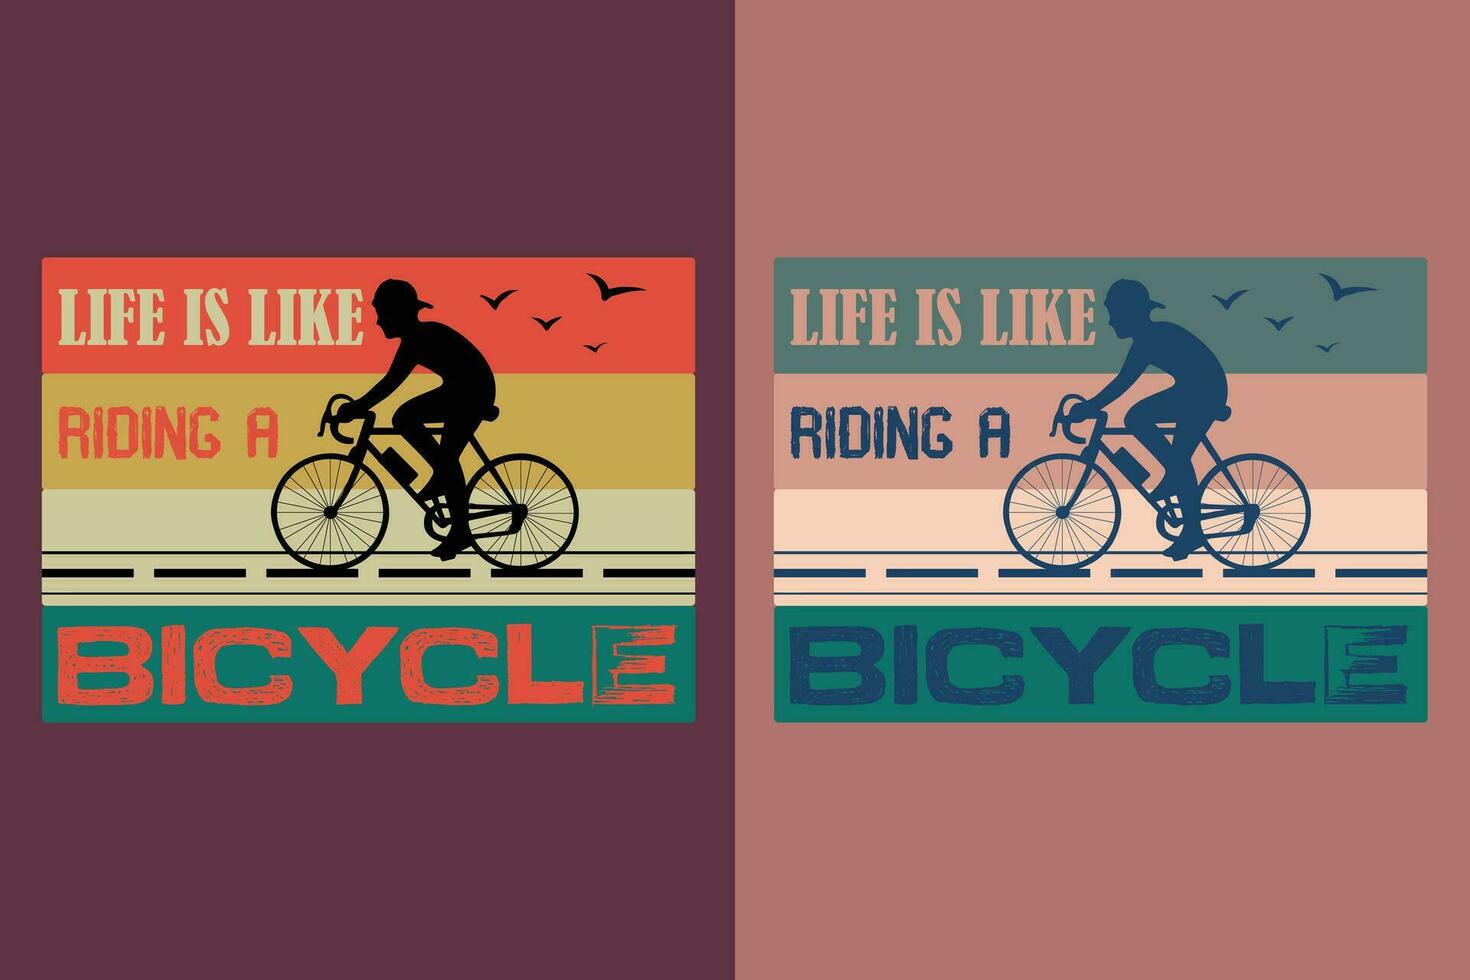 vida es me gusta montando un bicicleta, bicicleta camisa, regalo para bicicleta conducir, ciclista regalo, bicicleta ropa, bicicleta amante camisa, ciclismo camisa, andar en bicicleta regalo, andar en bicicleta camisa vector